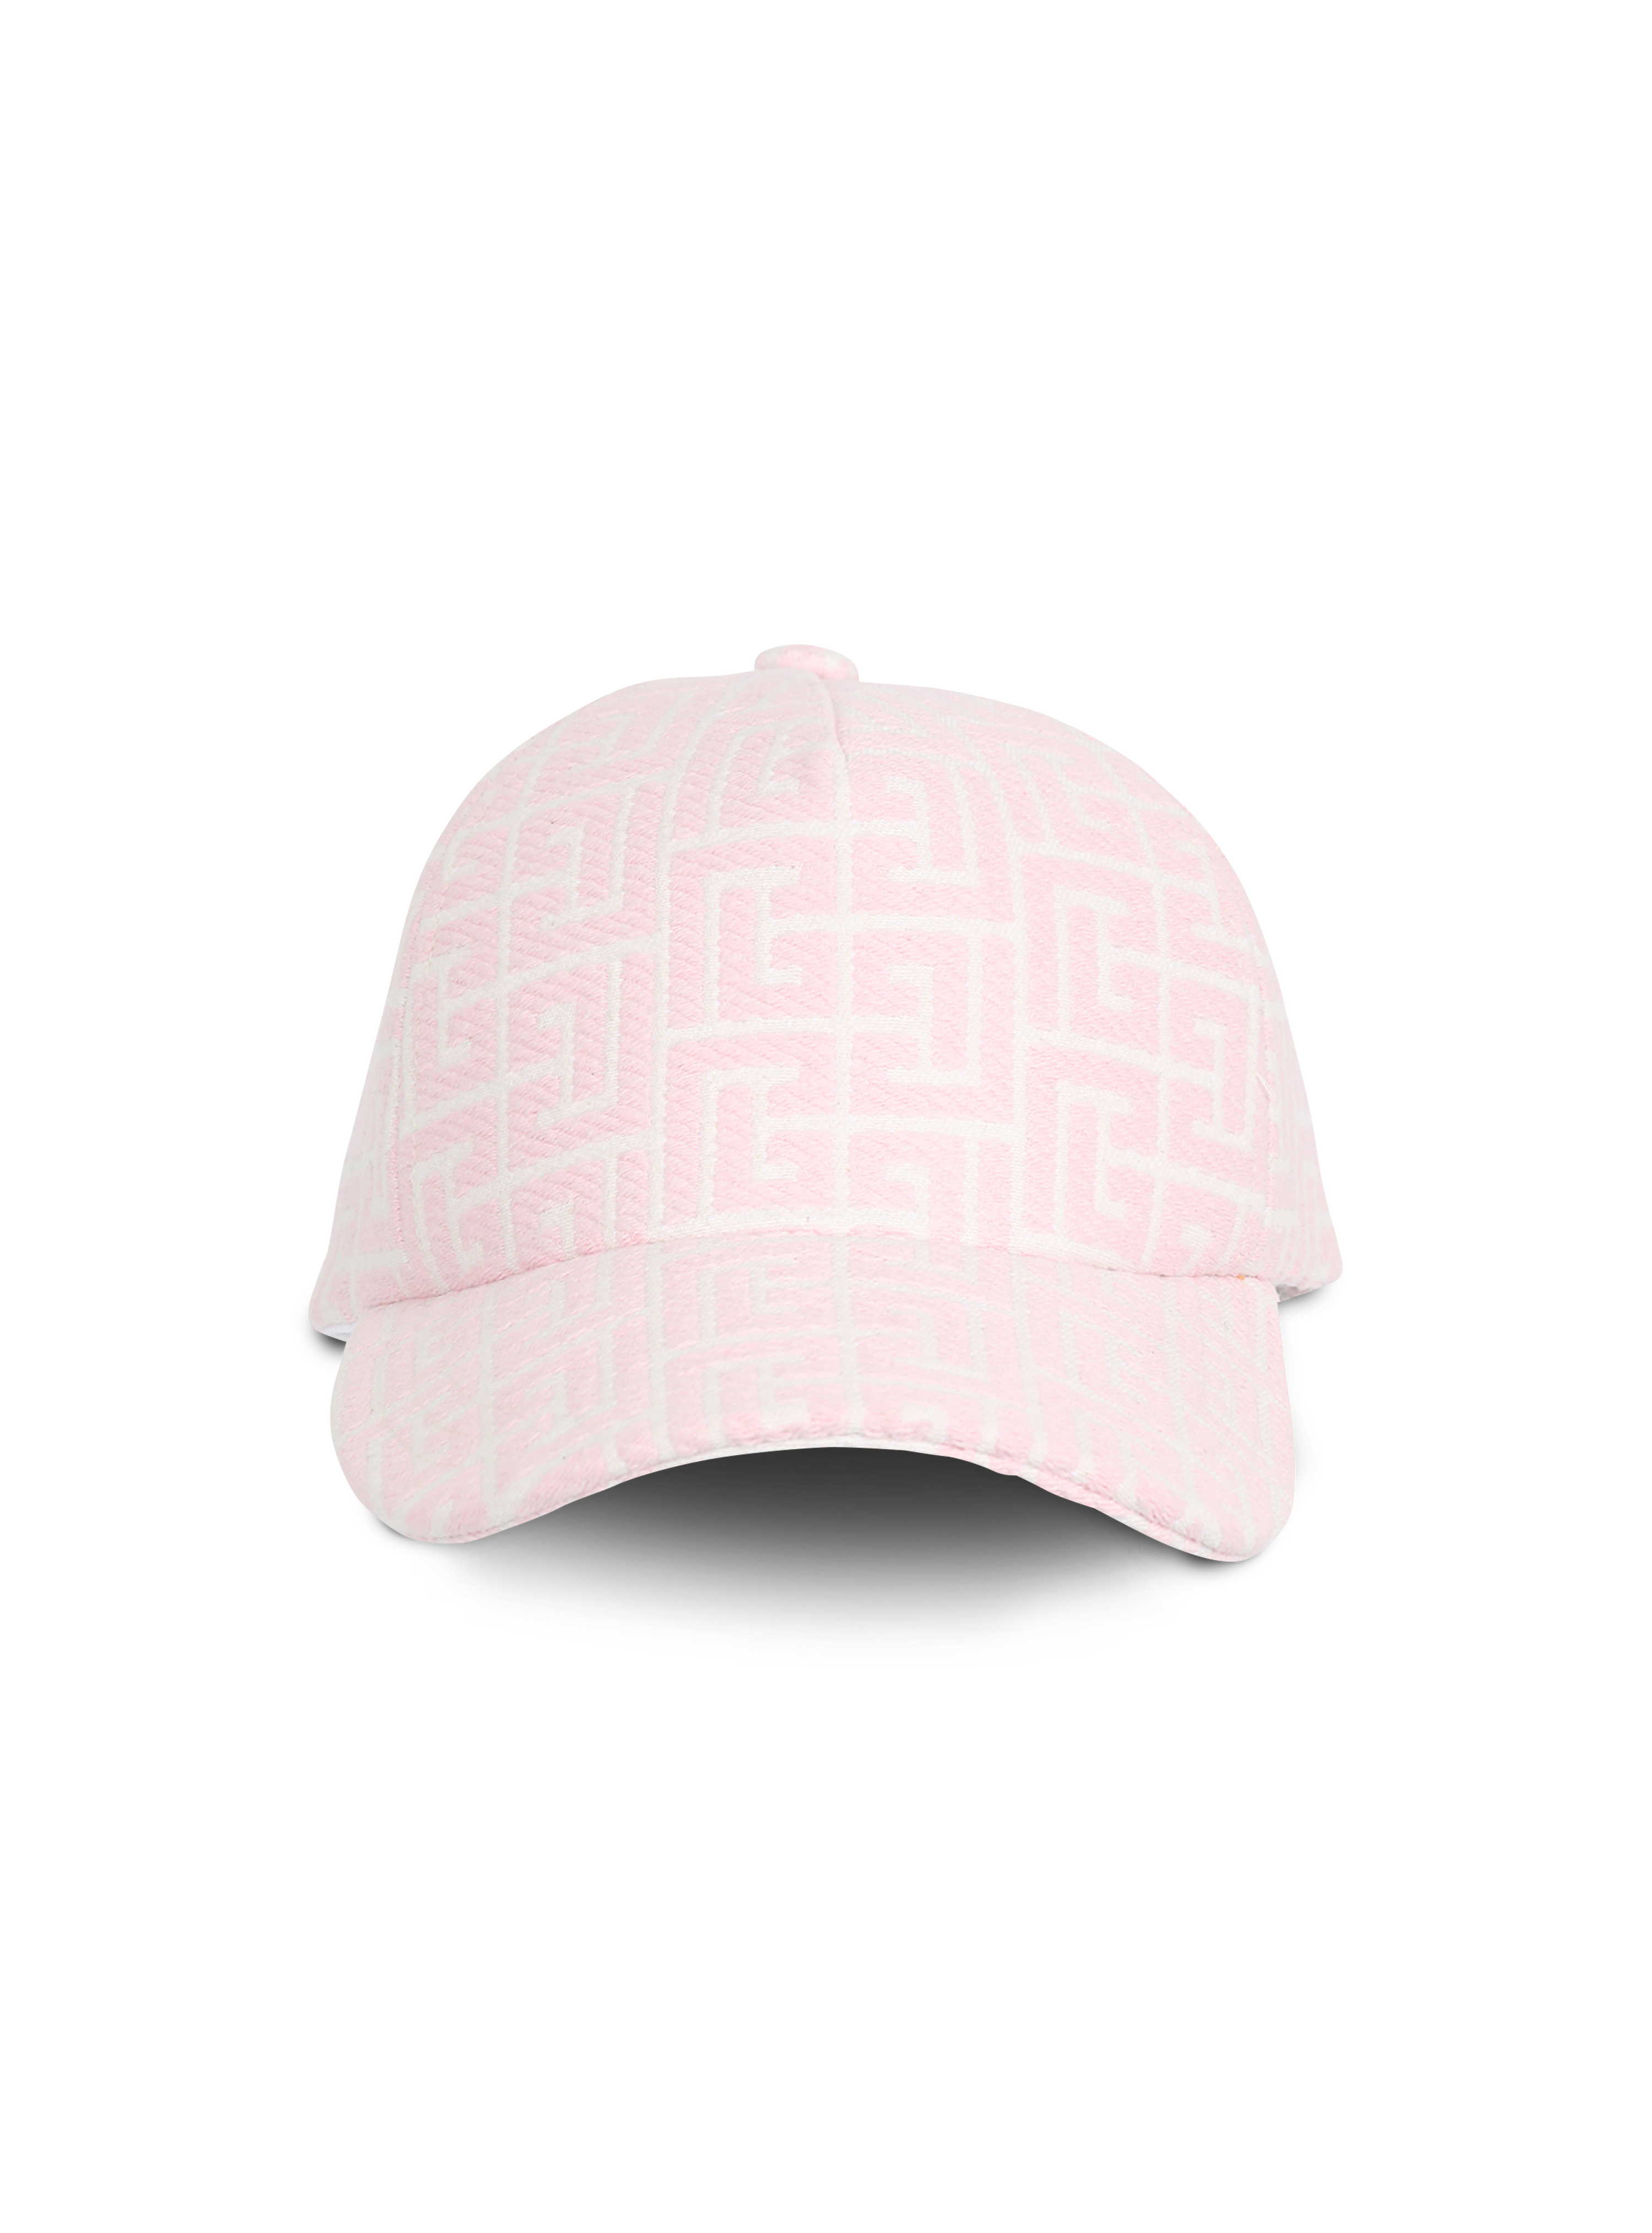 独家 - Balmain 交织字母装饰提花帽子, pink